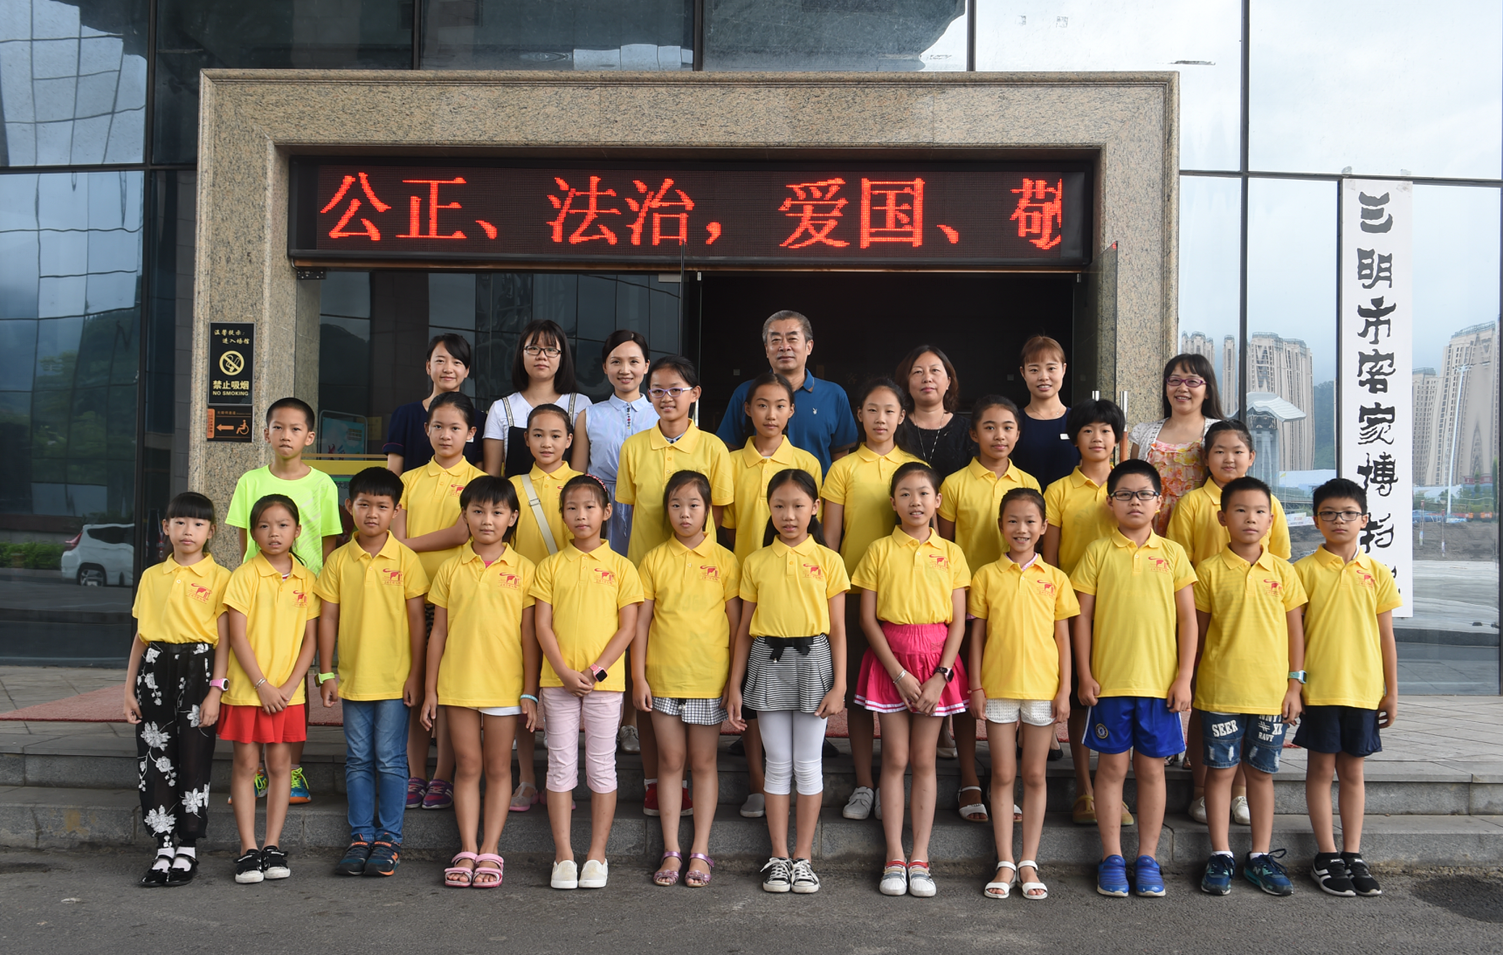 三明市博物馆举行2017年小小讲解员暑期培训班开班仪式